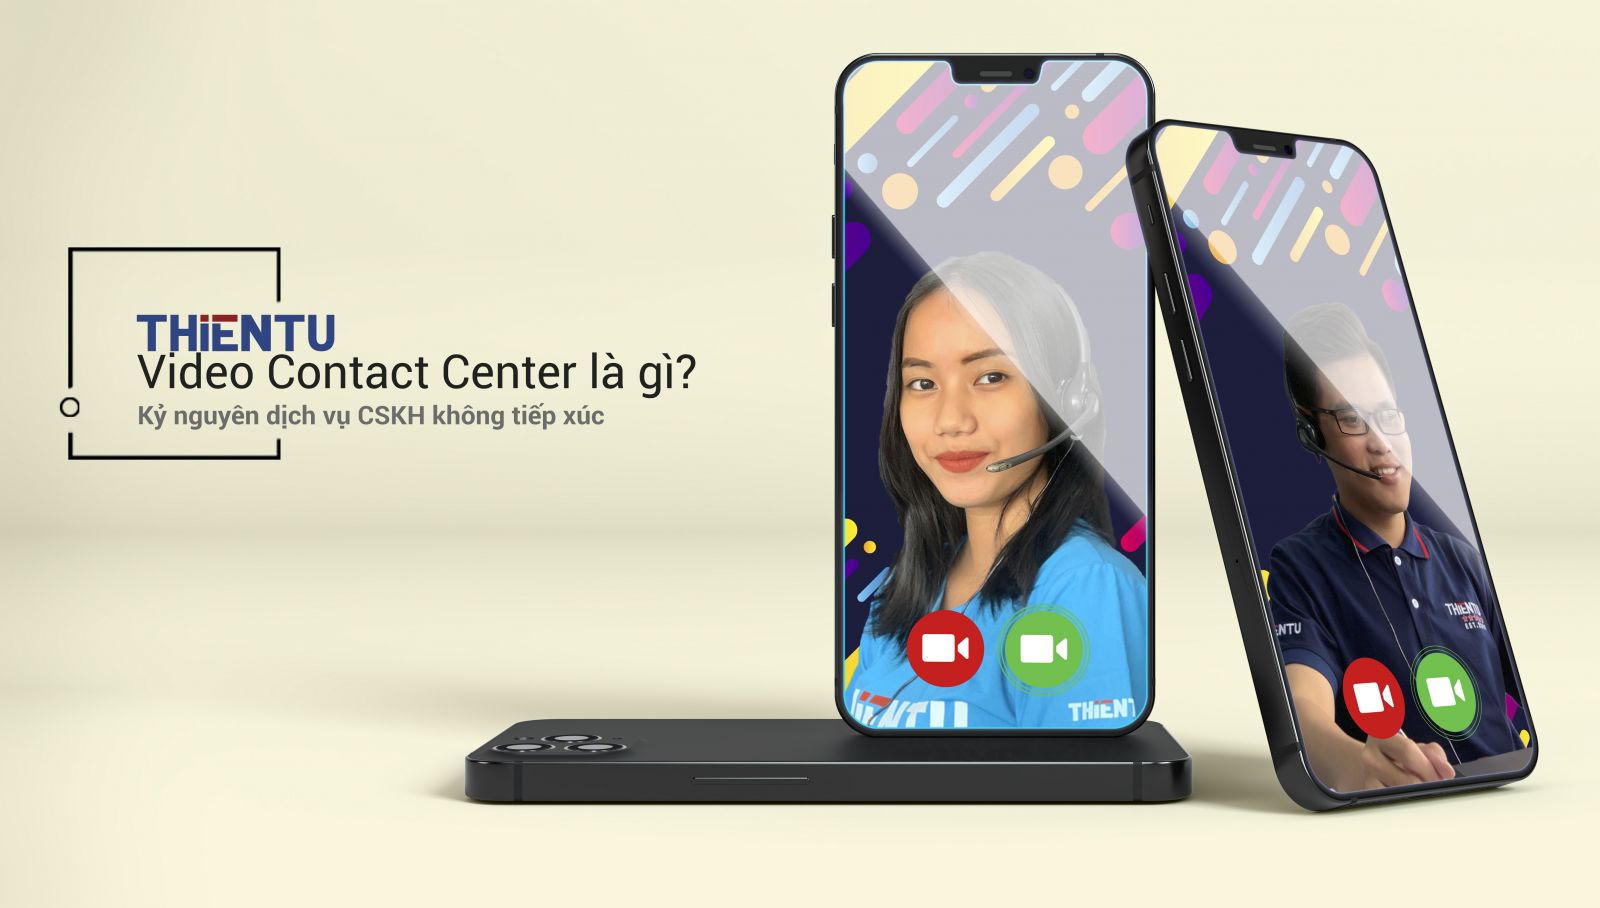 Video Contact Center là gì? | Kỷ nguyên dịch vụ CSKH không tiếp xúc